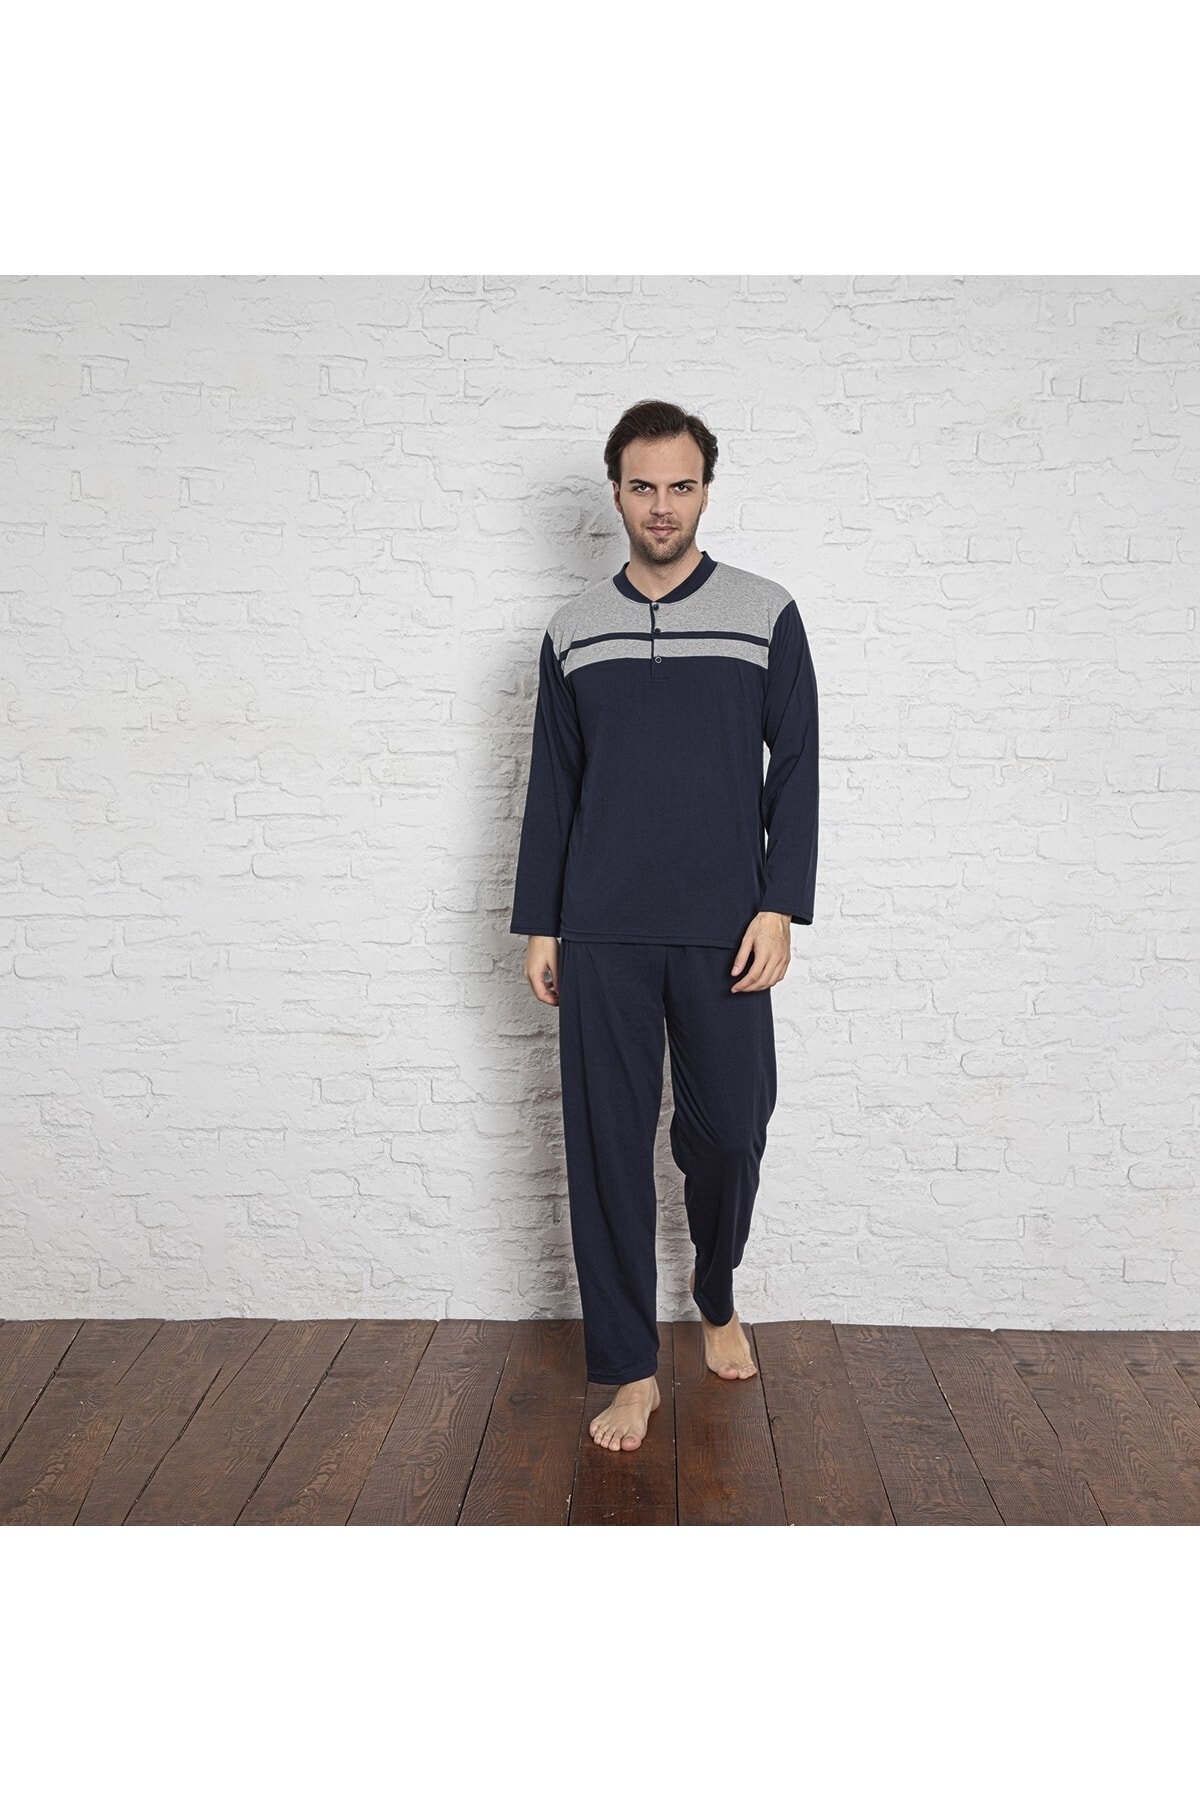 MİRELLA Erkek Lacivert-gri Parçalı Uzun Kollu Düğmeli Penye Kumaş Pijama Takımı